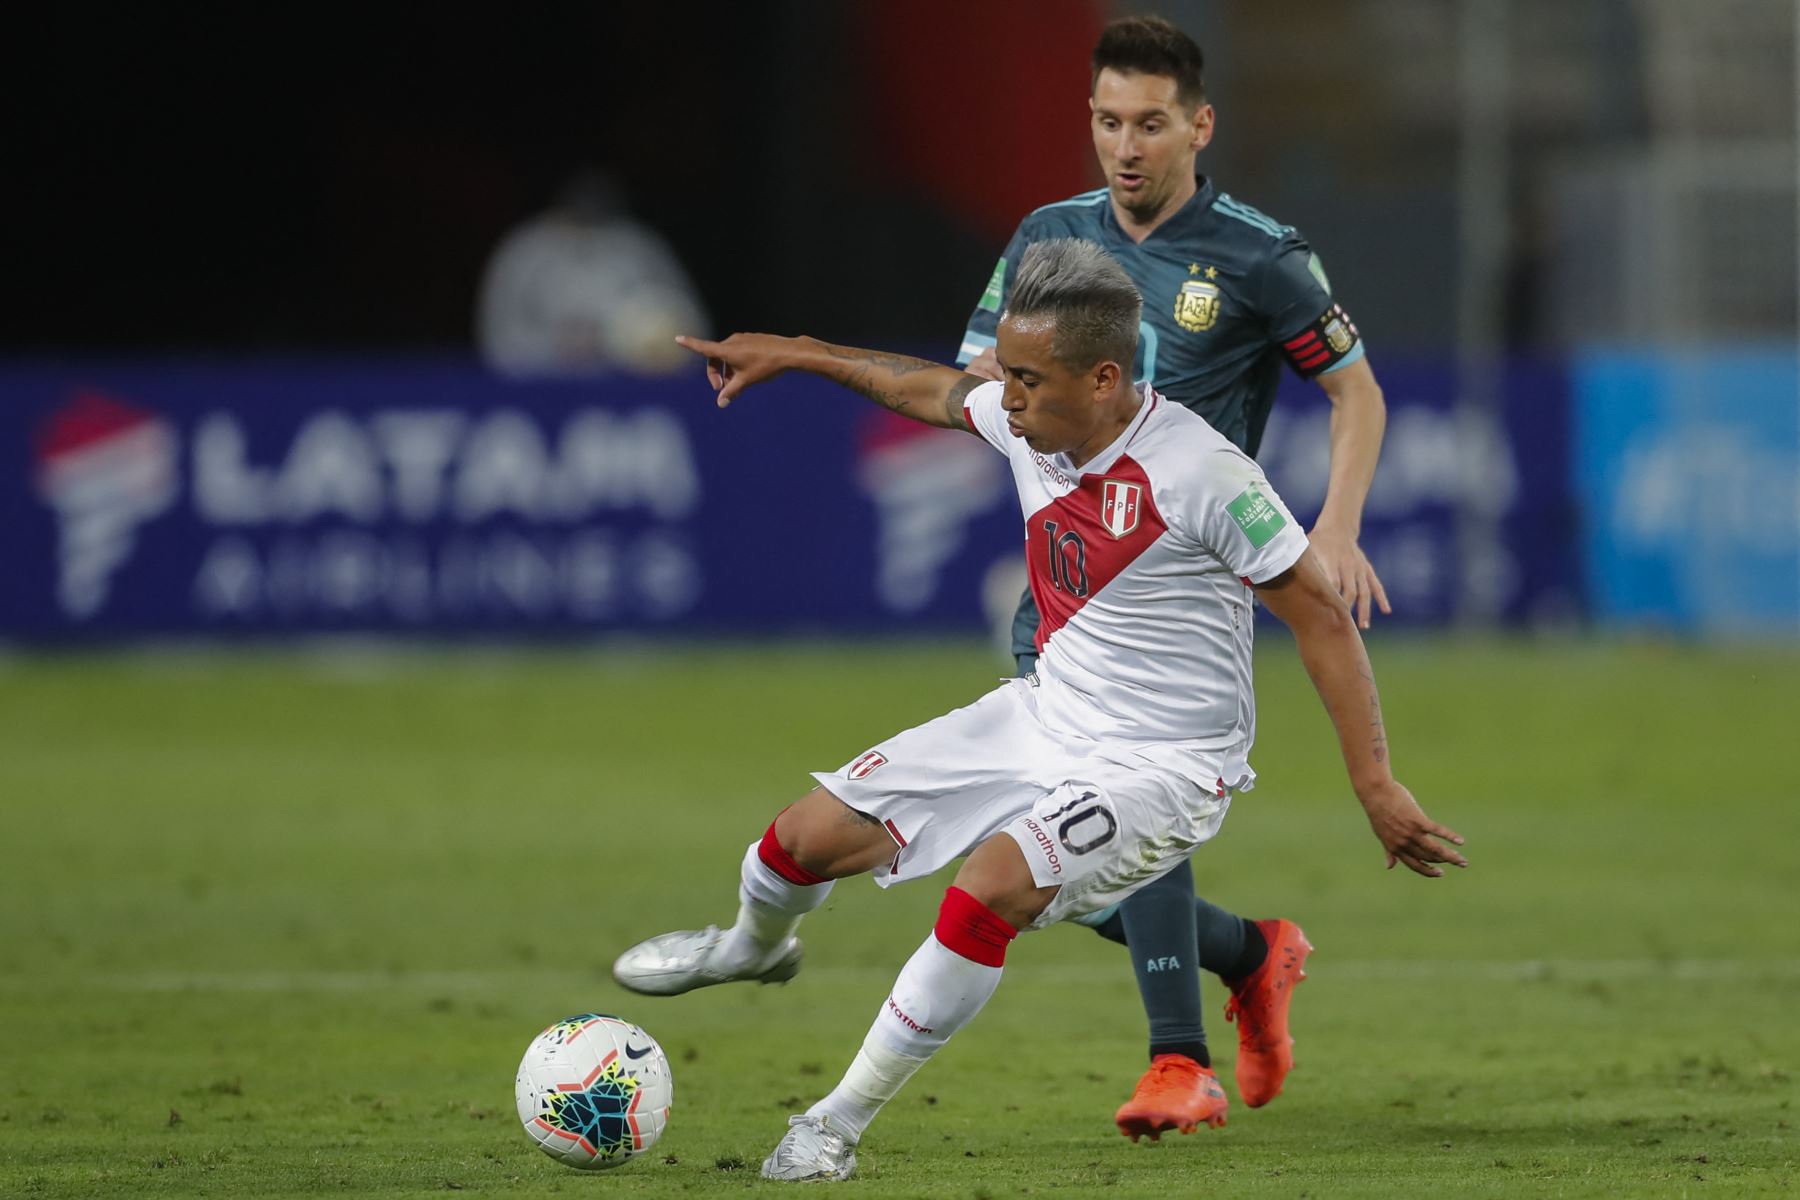 La selección peruana juega un partido clave ante Argentina.